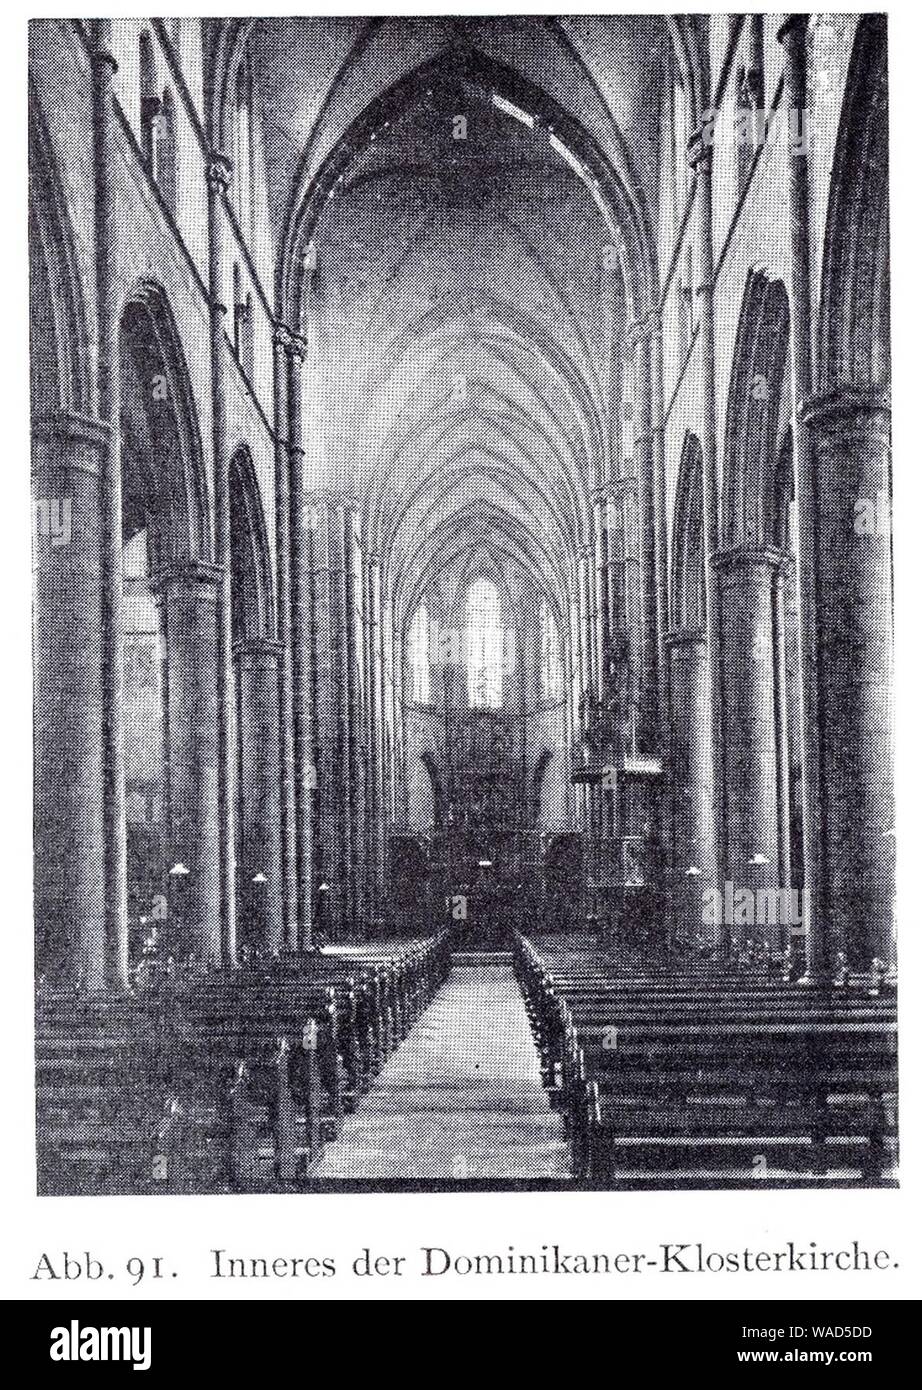 Dominikanerkloster an der Herzogstraße in Düsseldorf, 1867 bis 1887, Dombaumeister Friedrich von Schmidt aus Wien, Inneres der Dominikaner-Klosterkirche. Stock Photo